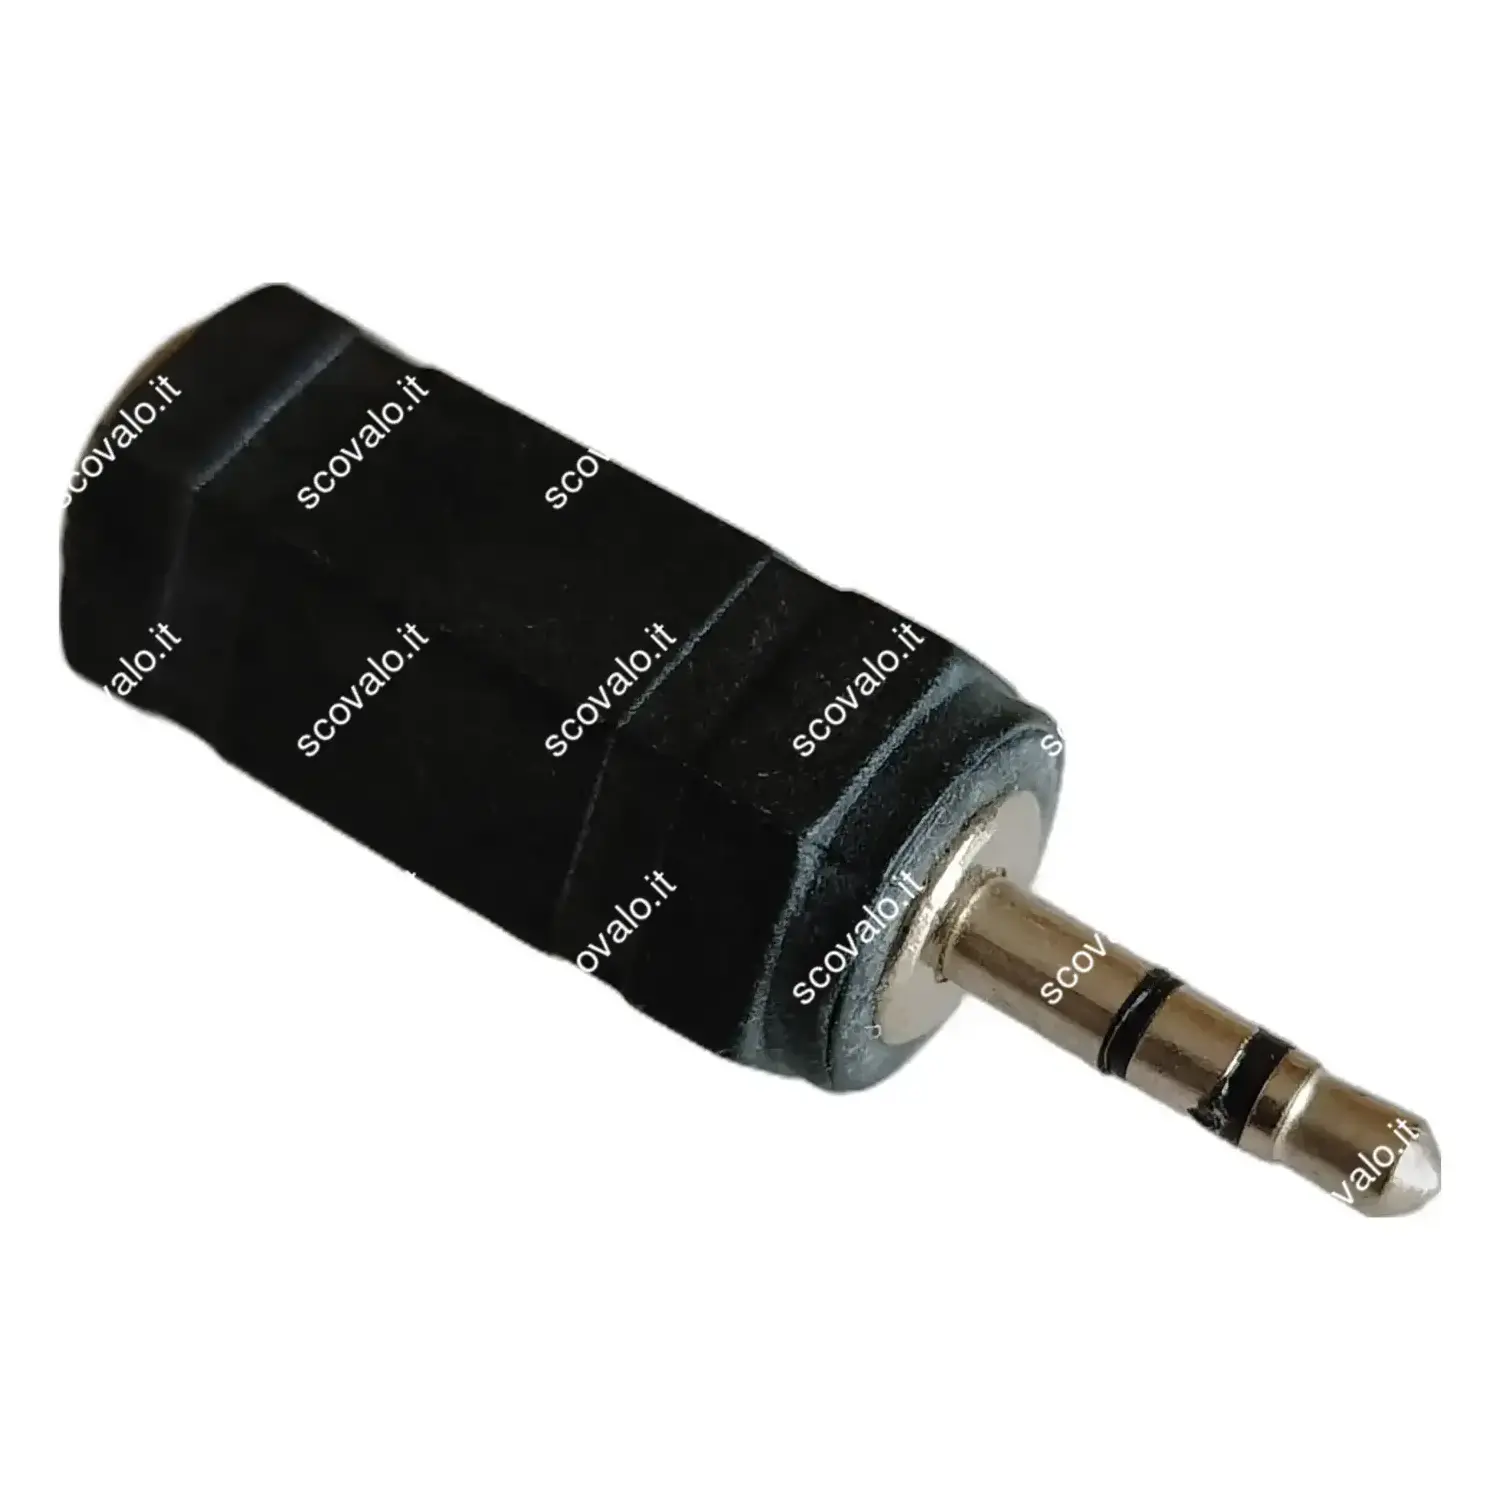 immagine adattatore cuffie jack aux da 2.5 mm a presa stereo 3.5 mm audio